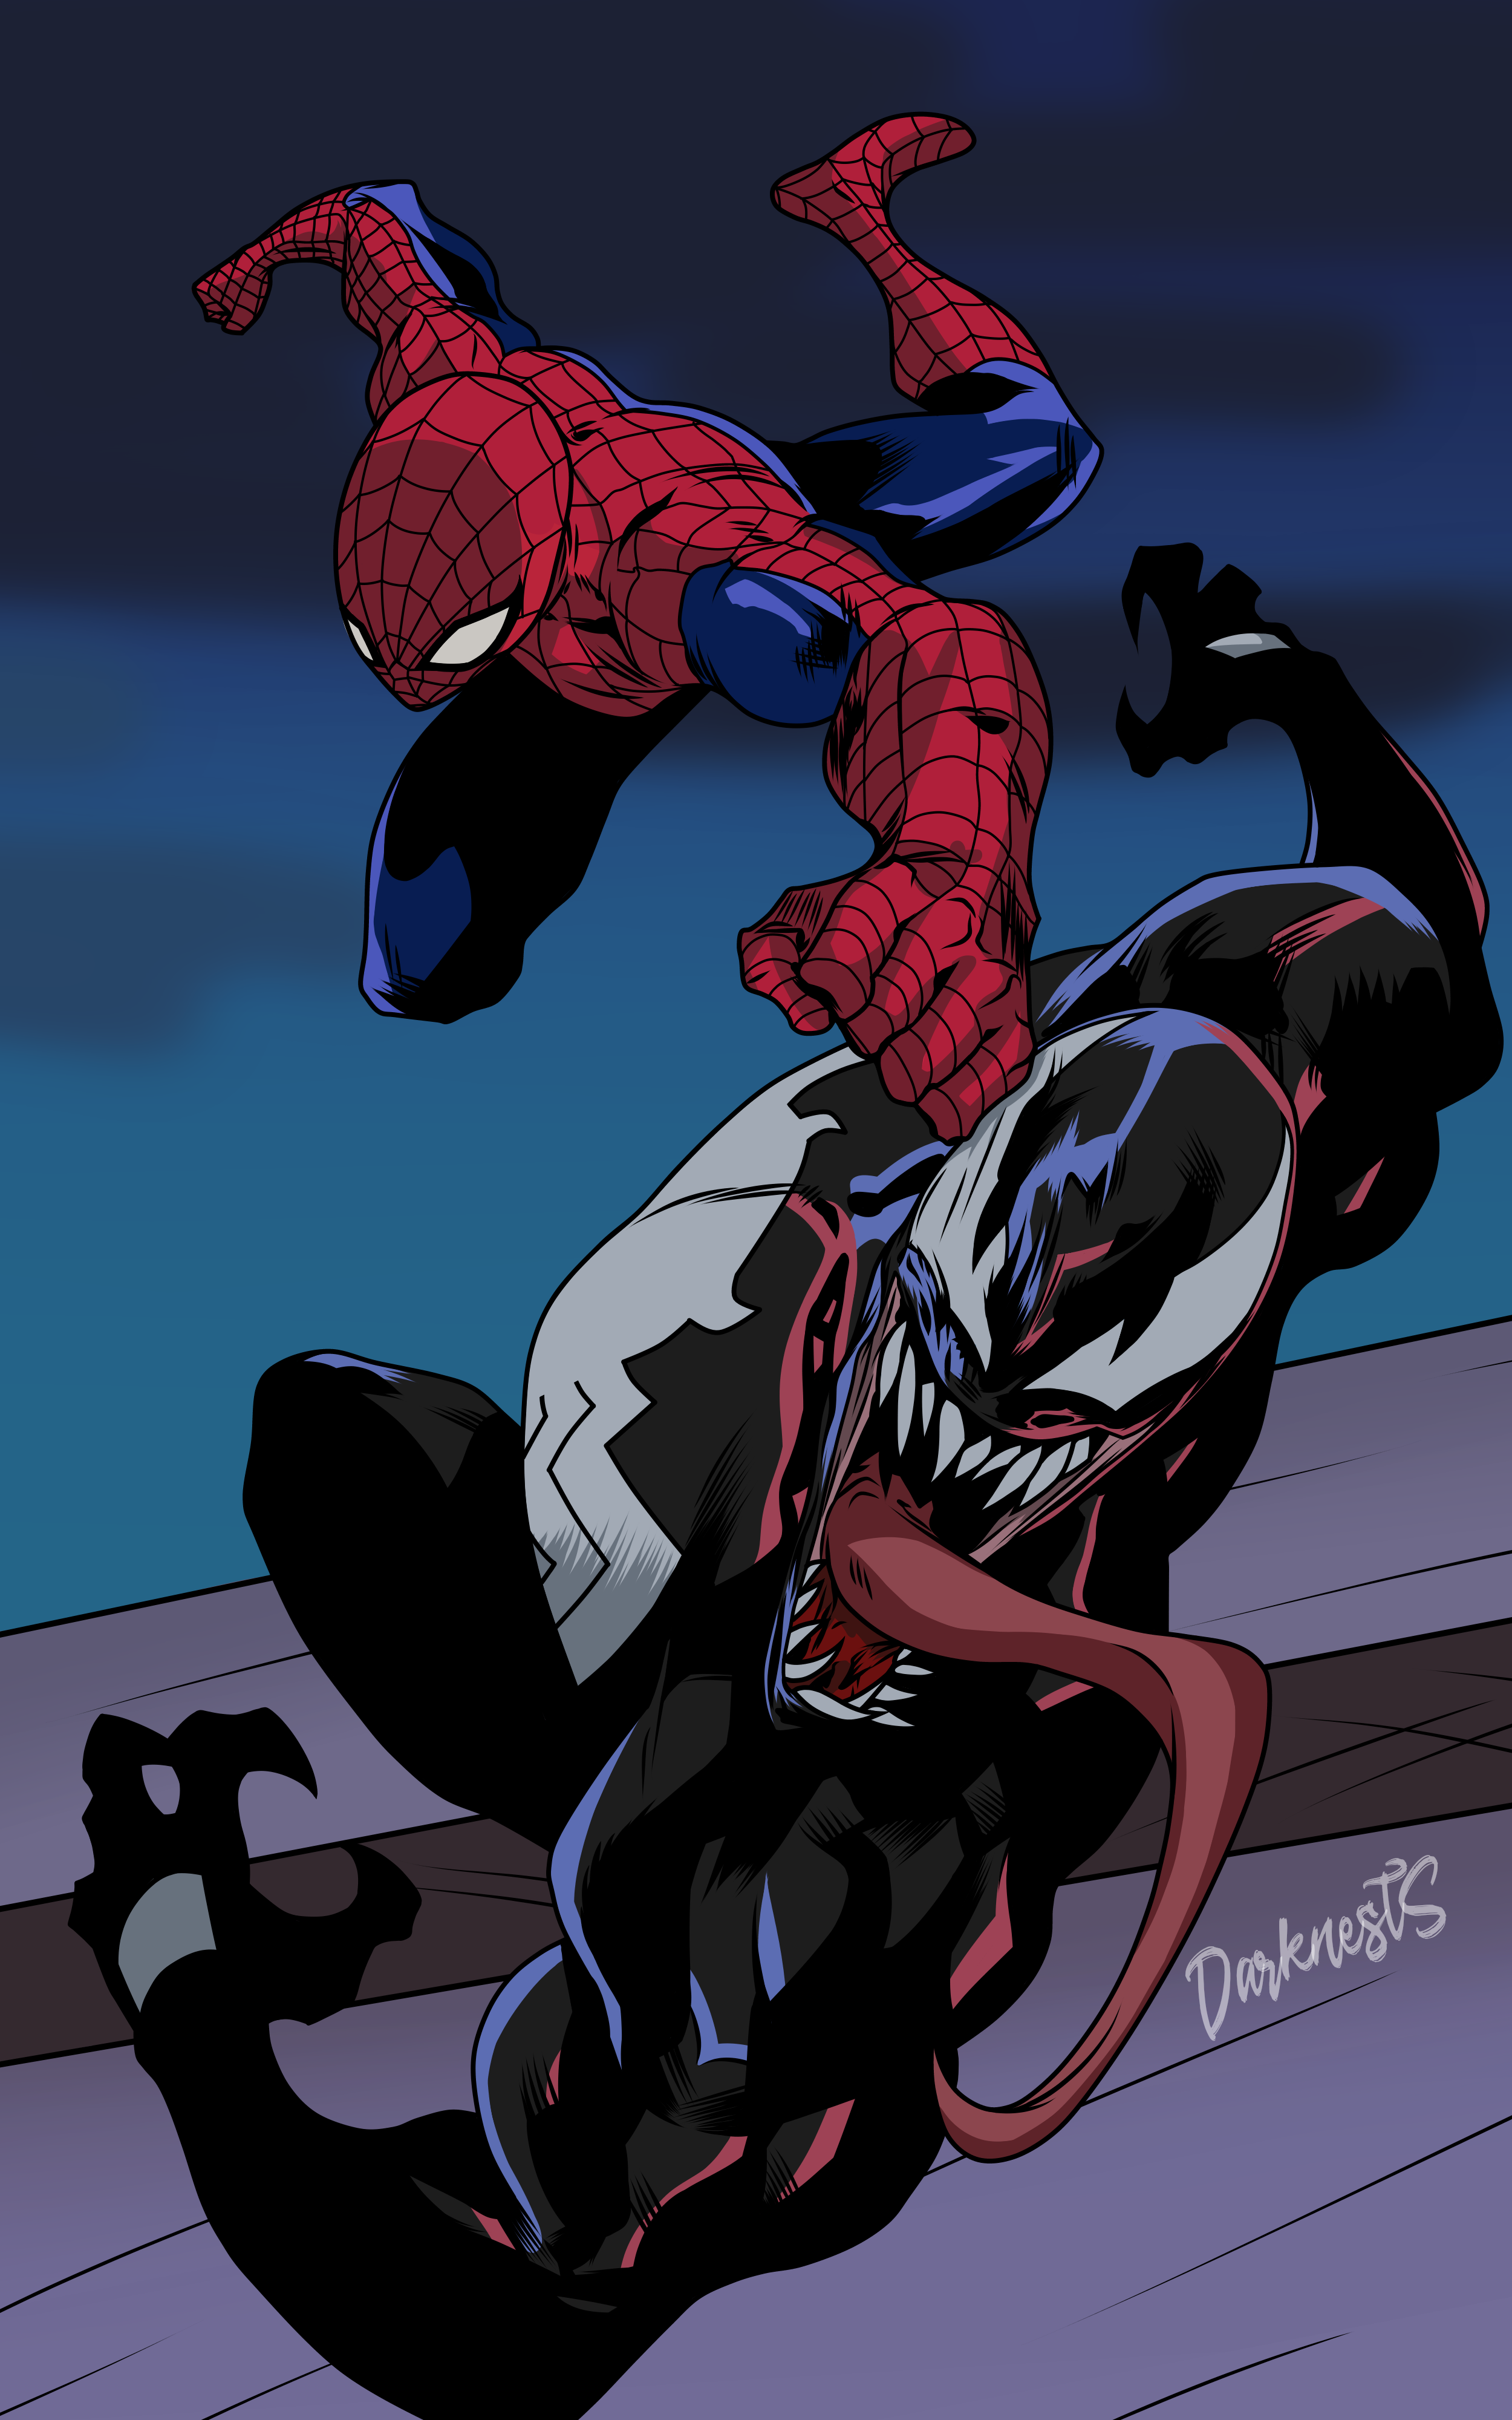 Spider-Man VS Venom (The Animated Series Style) by DarknestSpawn on  DeviantArt